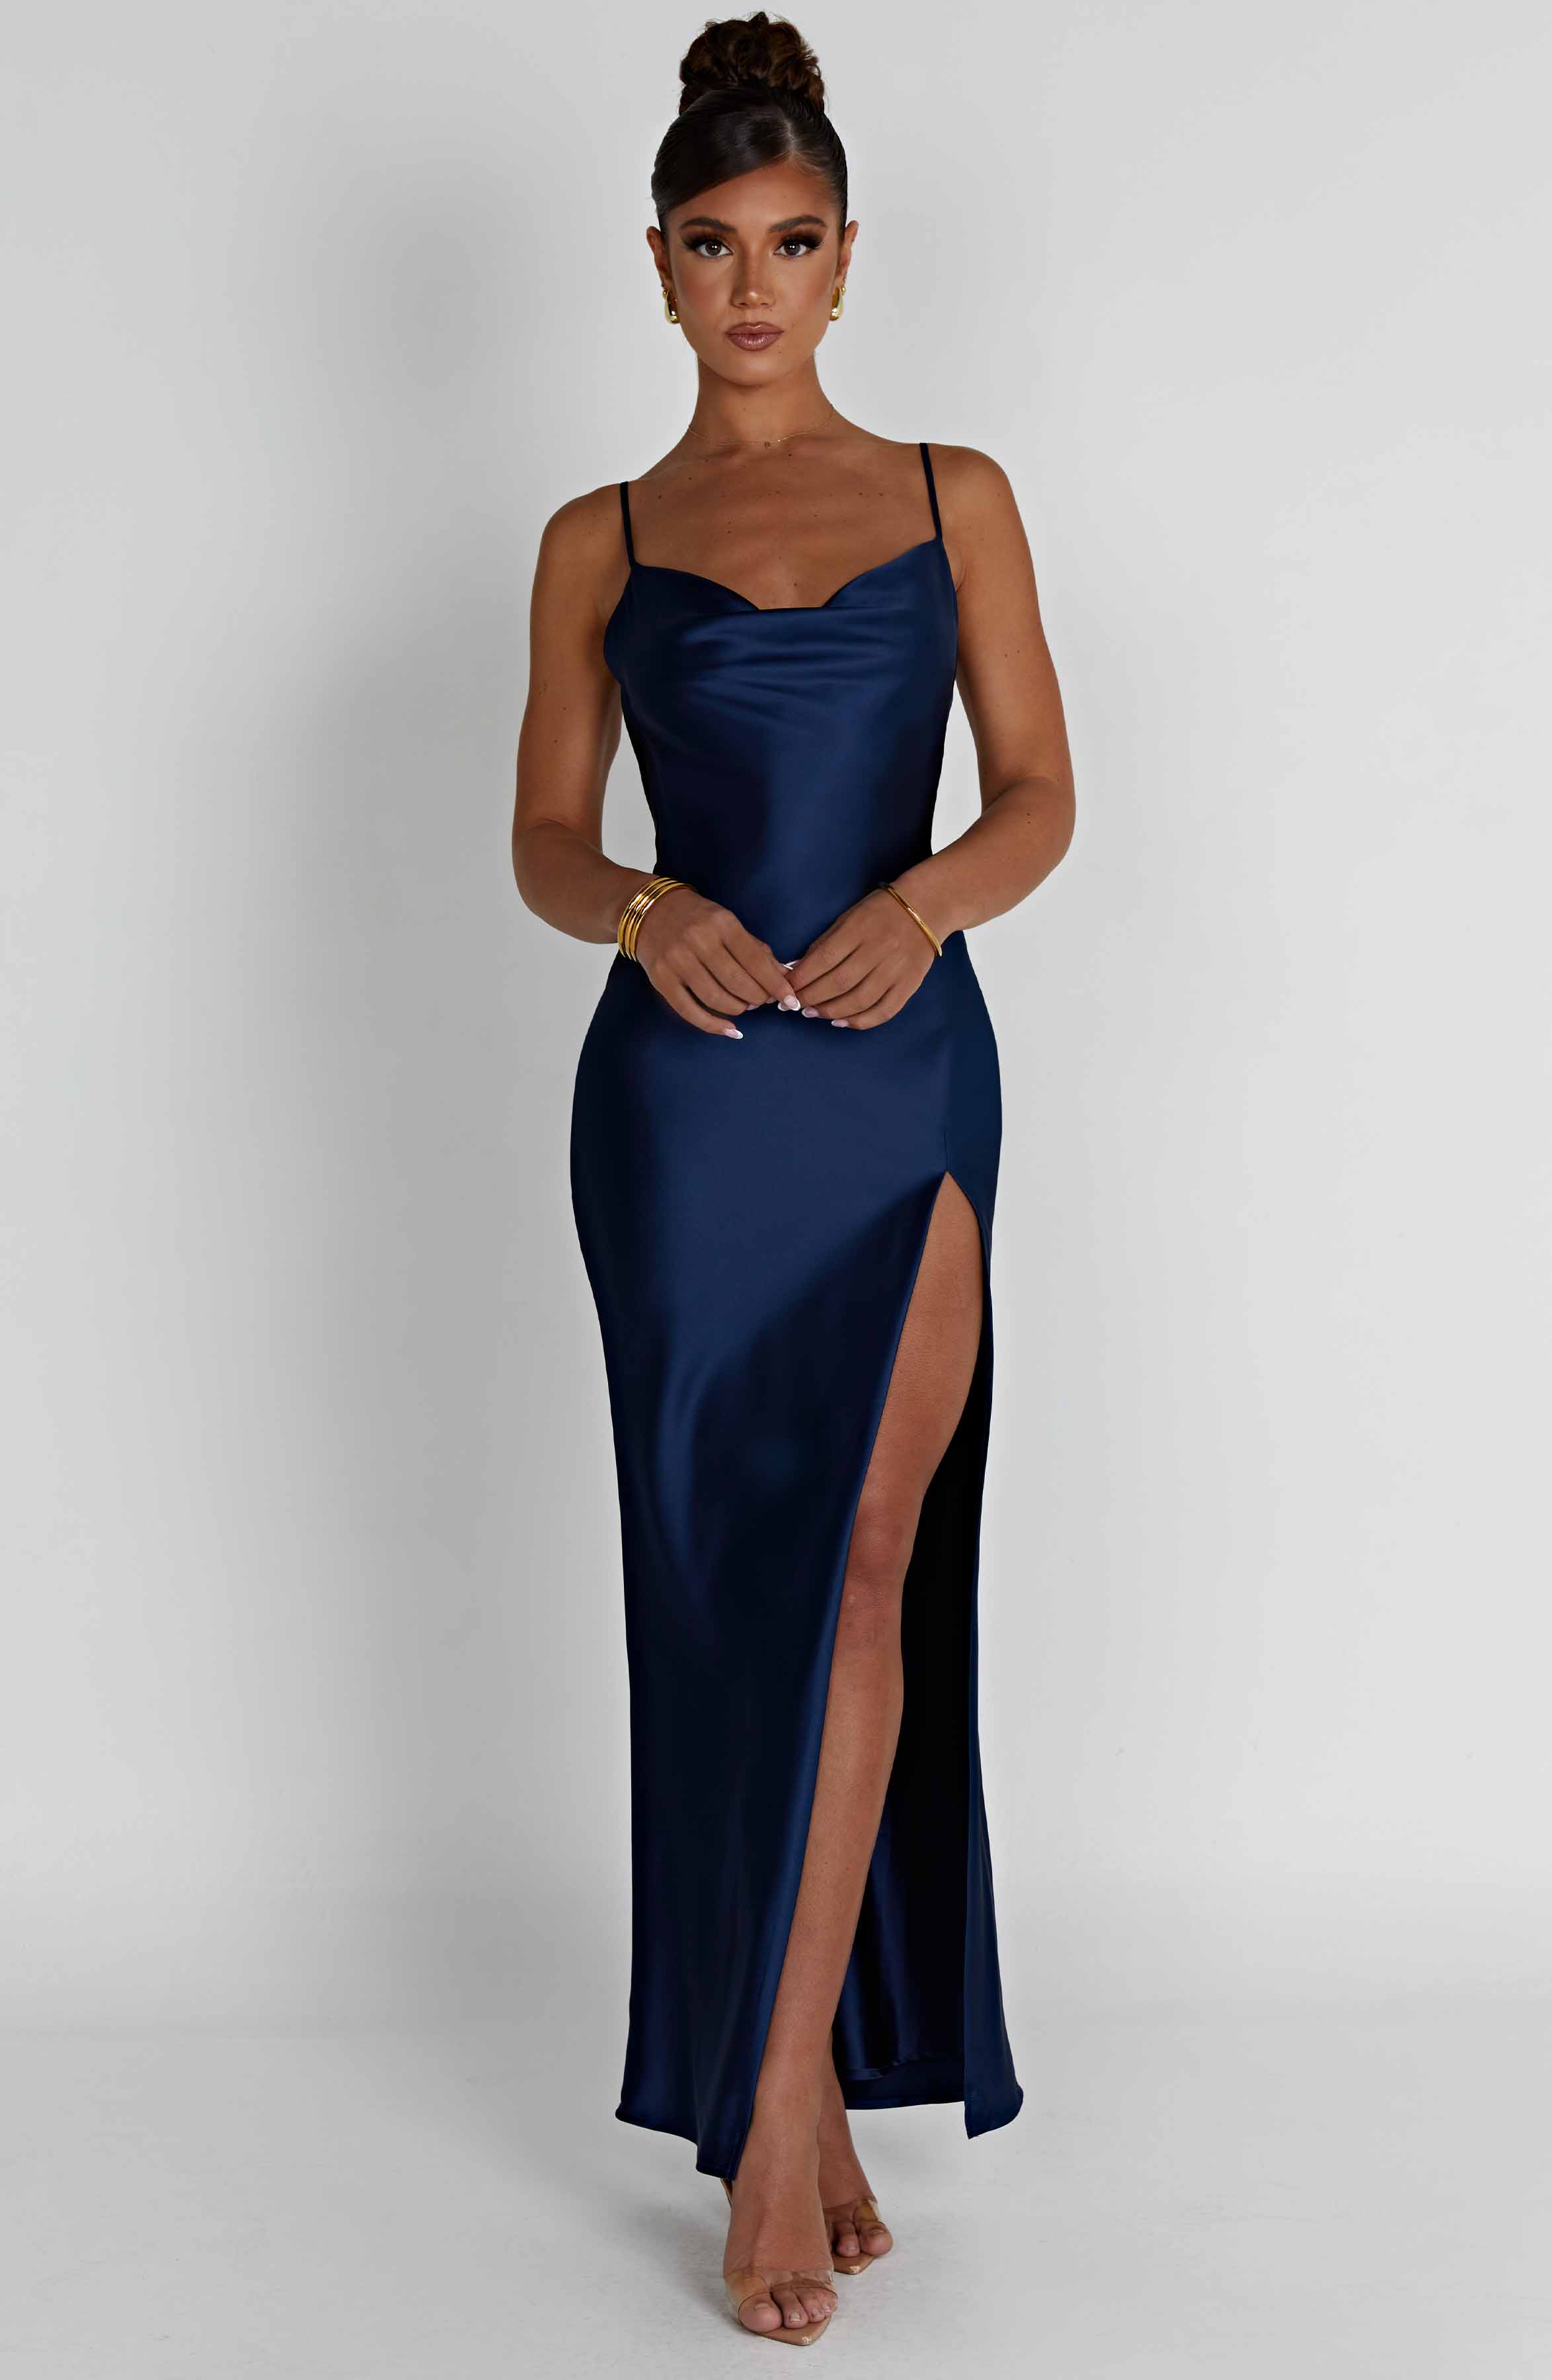 Shop Formal Dress - Celestina Maxi Dress - Navy featured image